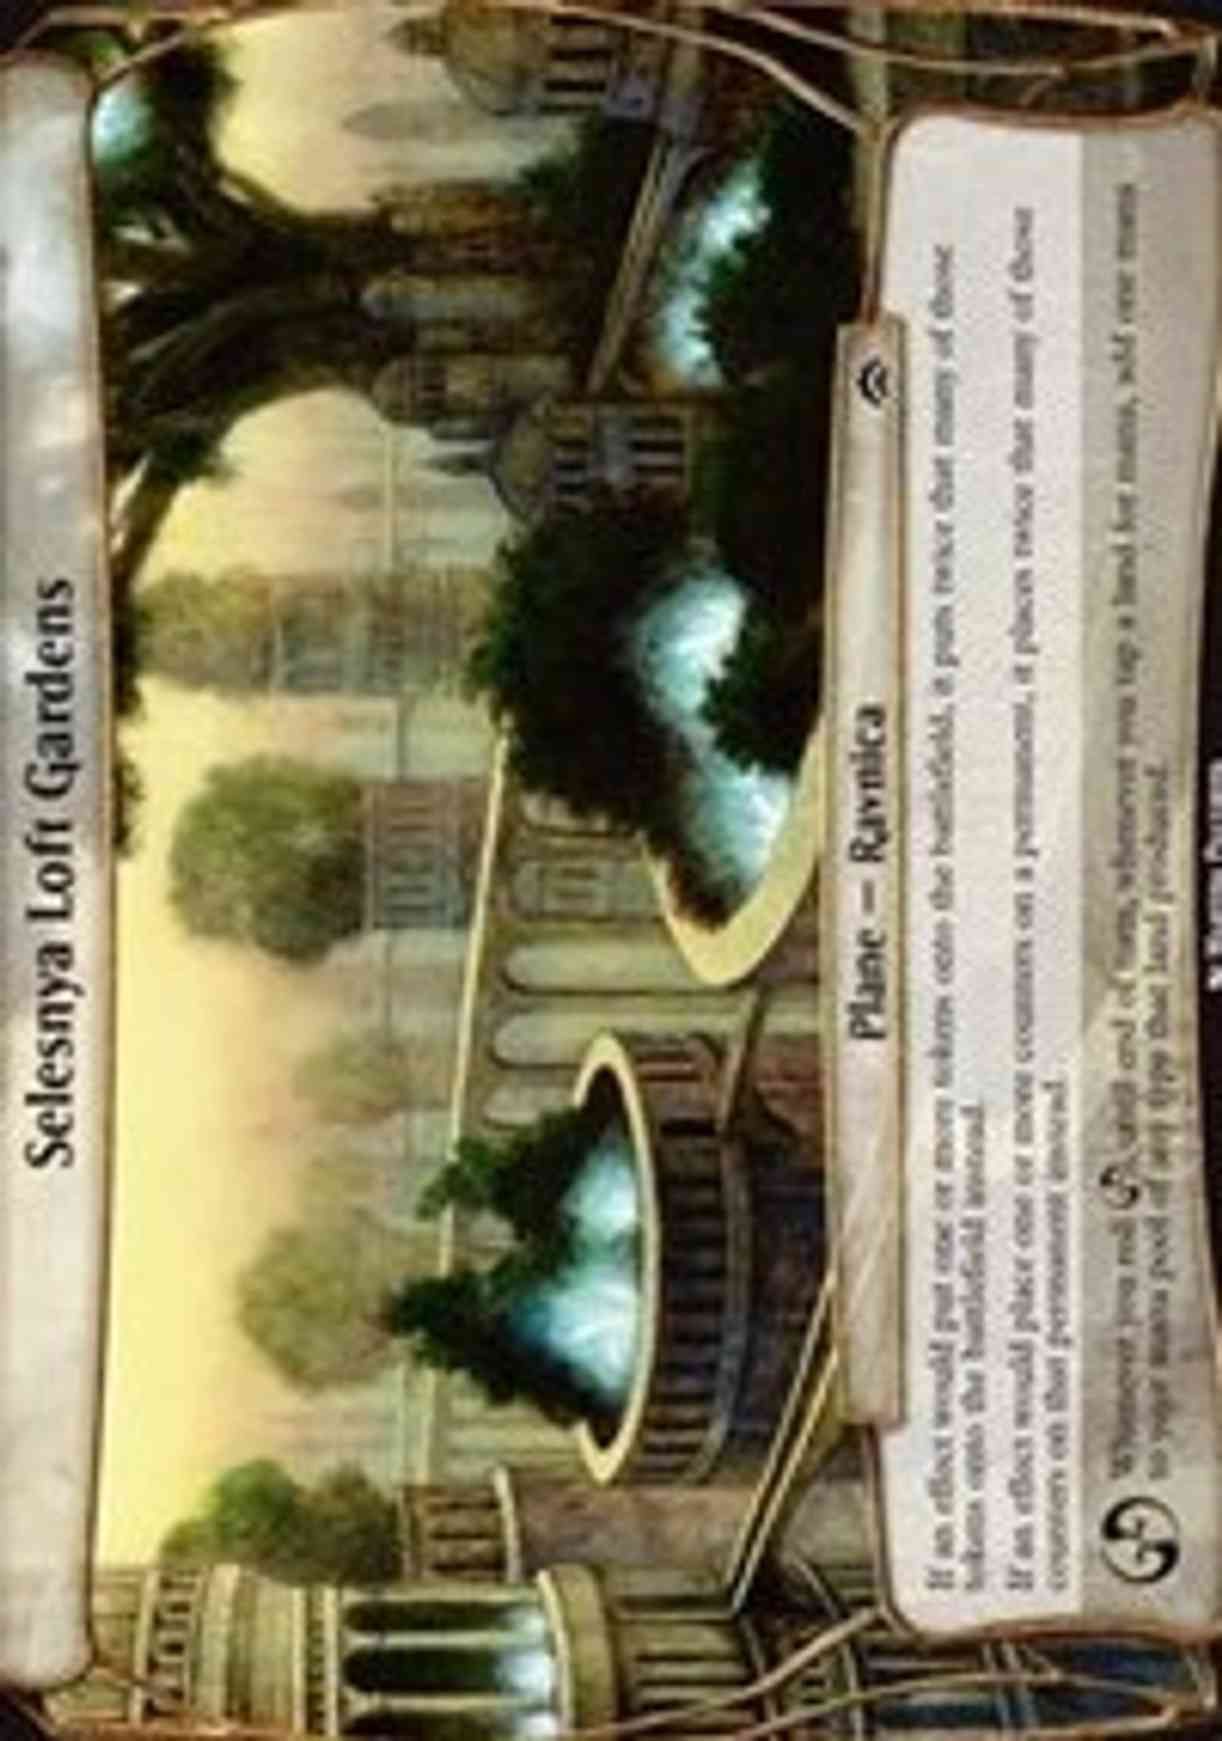 Selesnya Loft Gardens (Planechase Anthology) magic card front